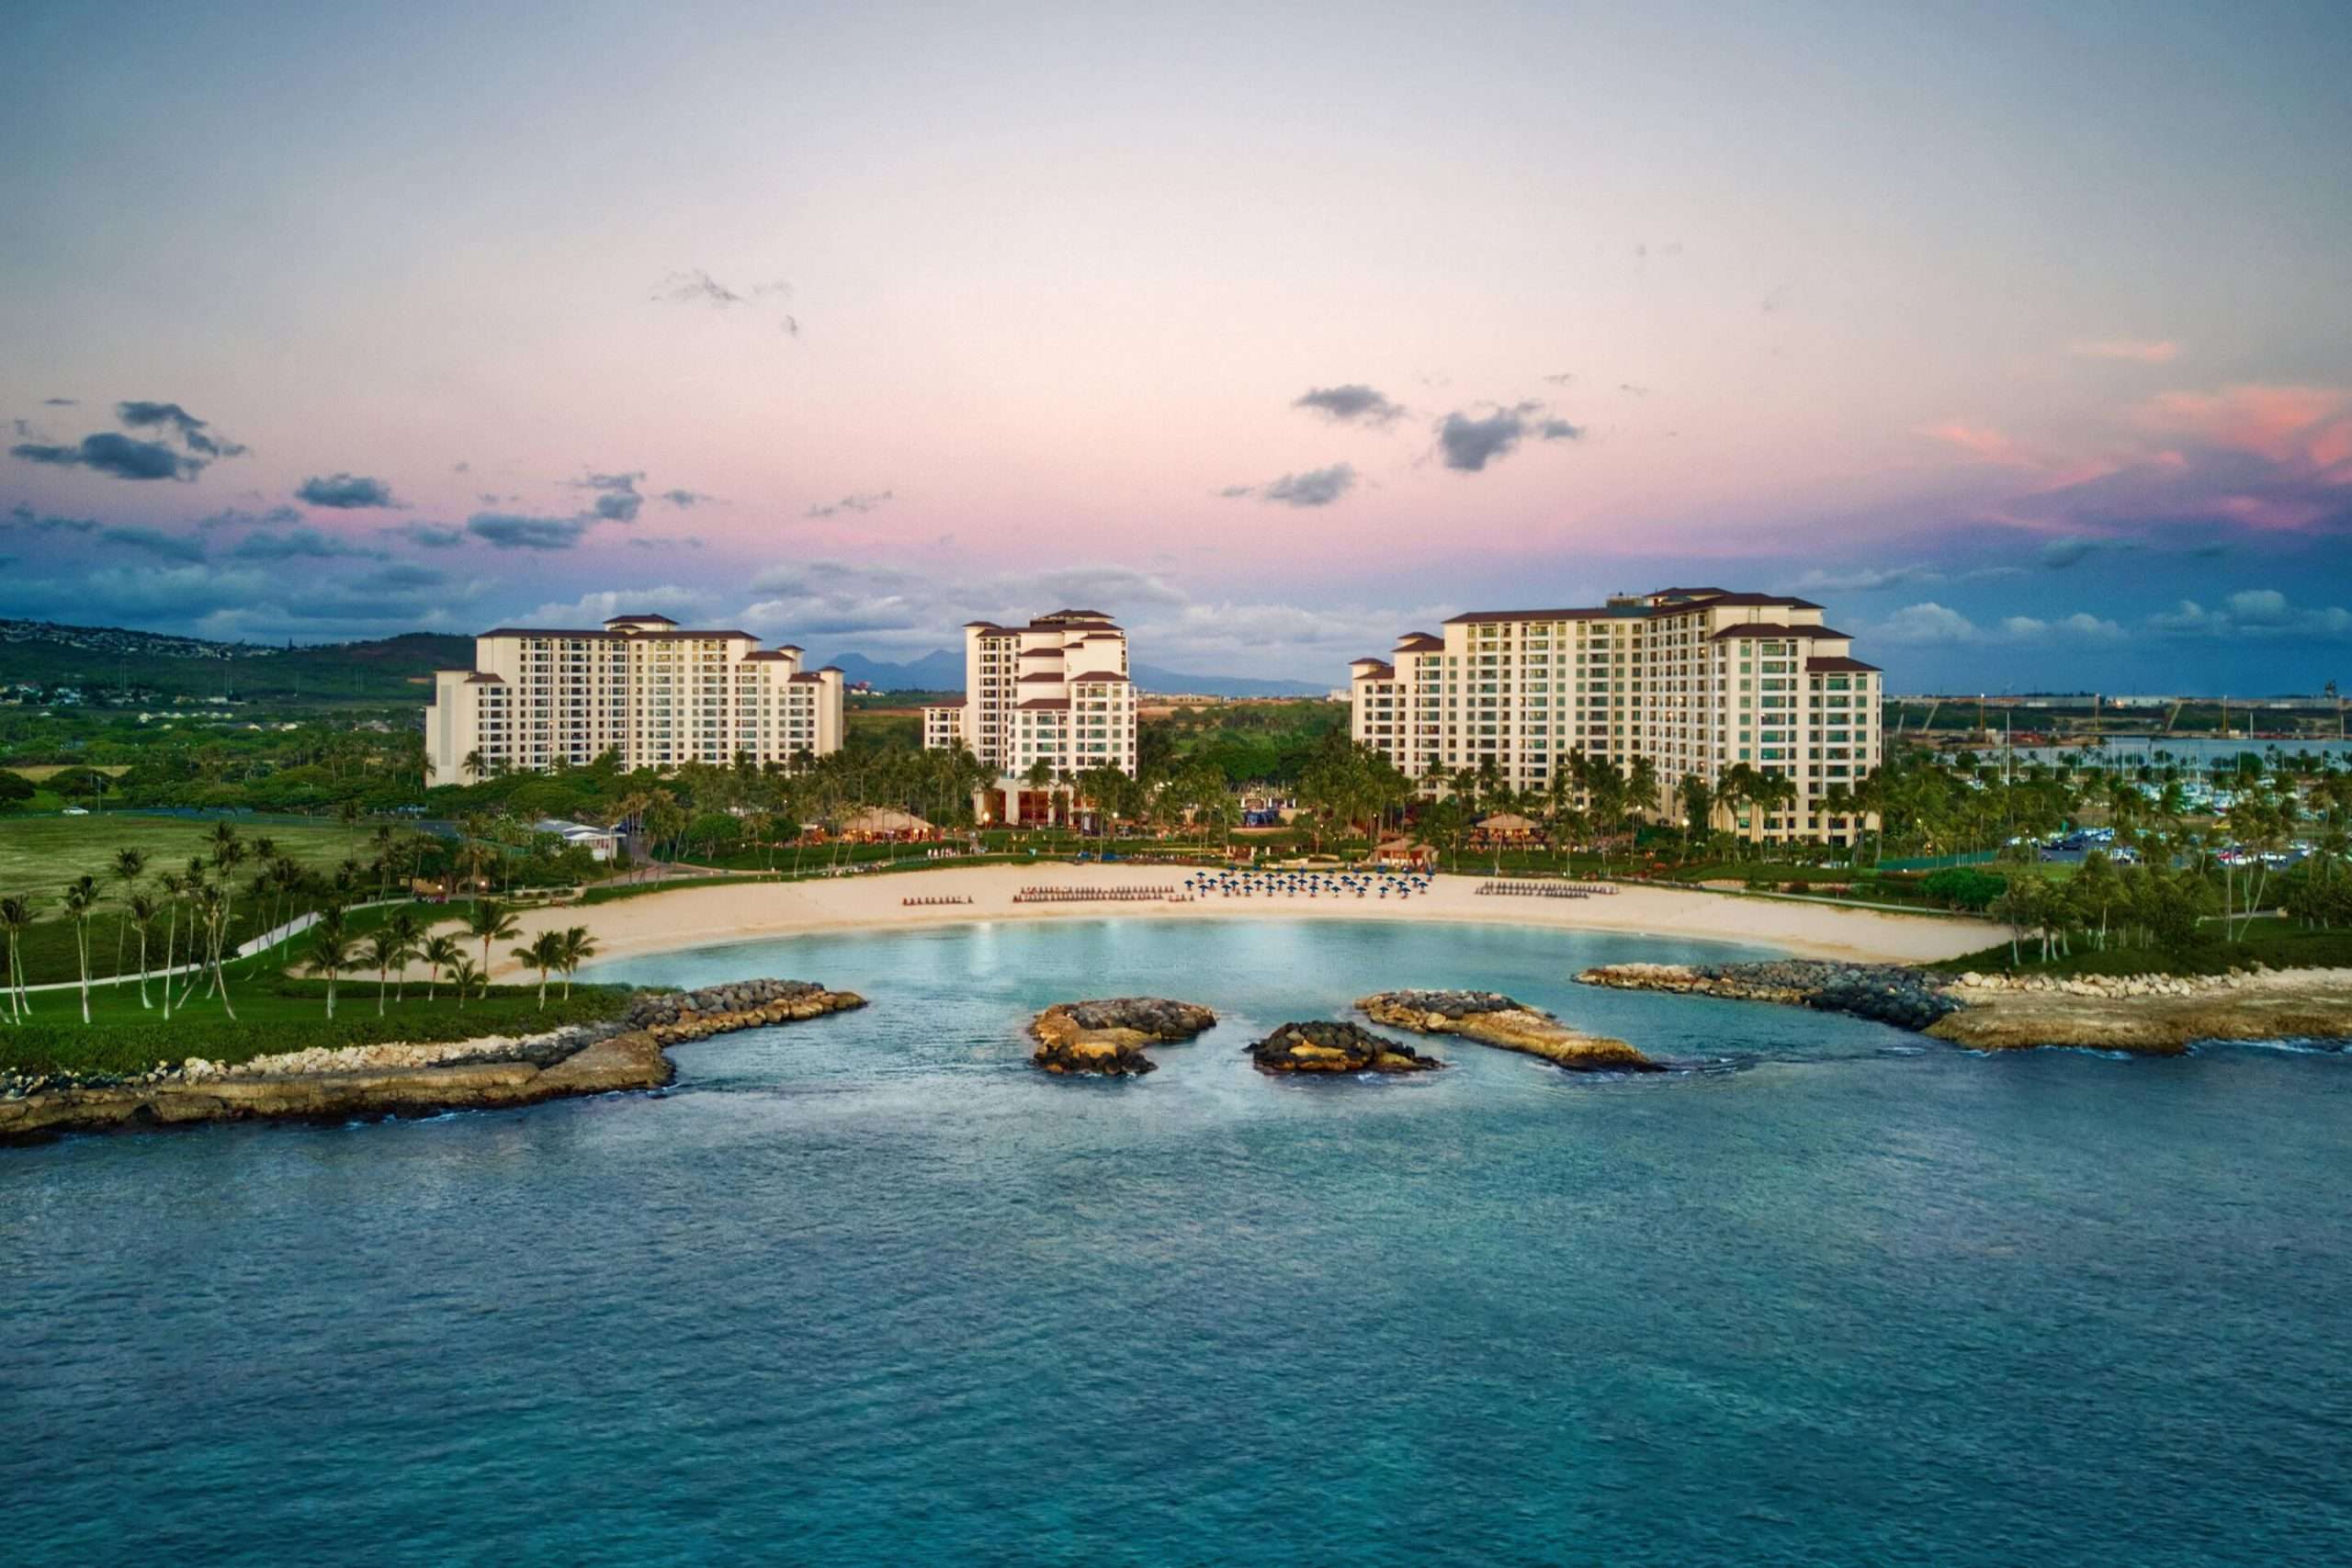 Marriott Vacation Club Resorts: 10 Most Popular Locations ...